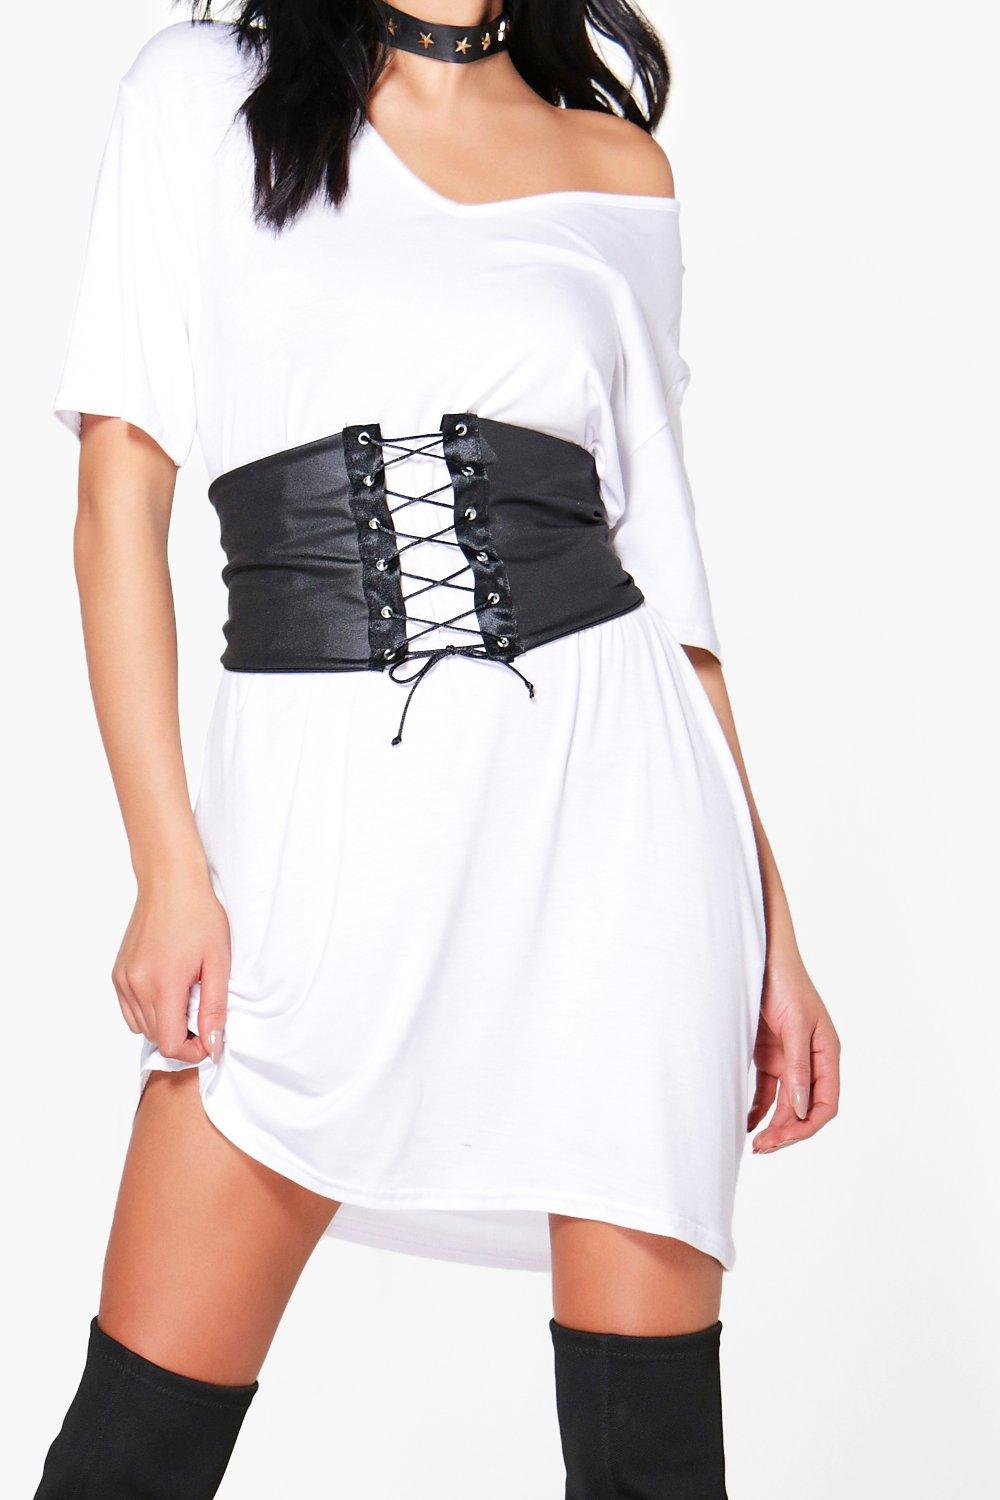 t shirt dress with corset belt